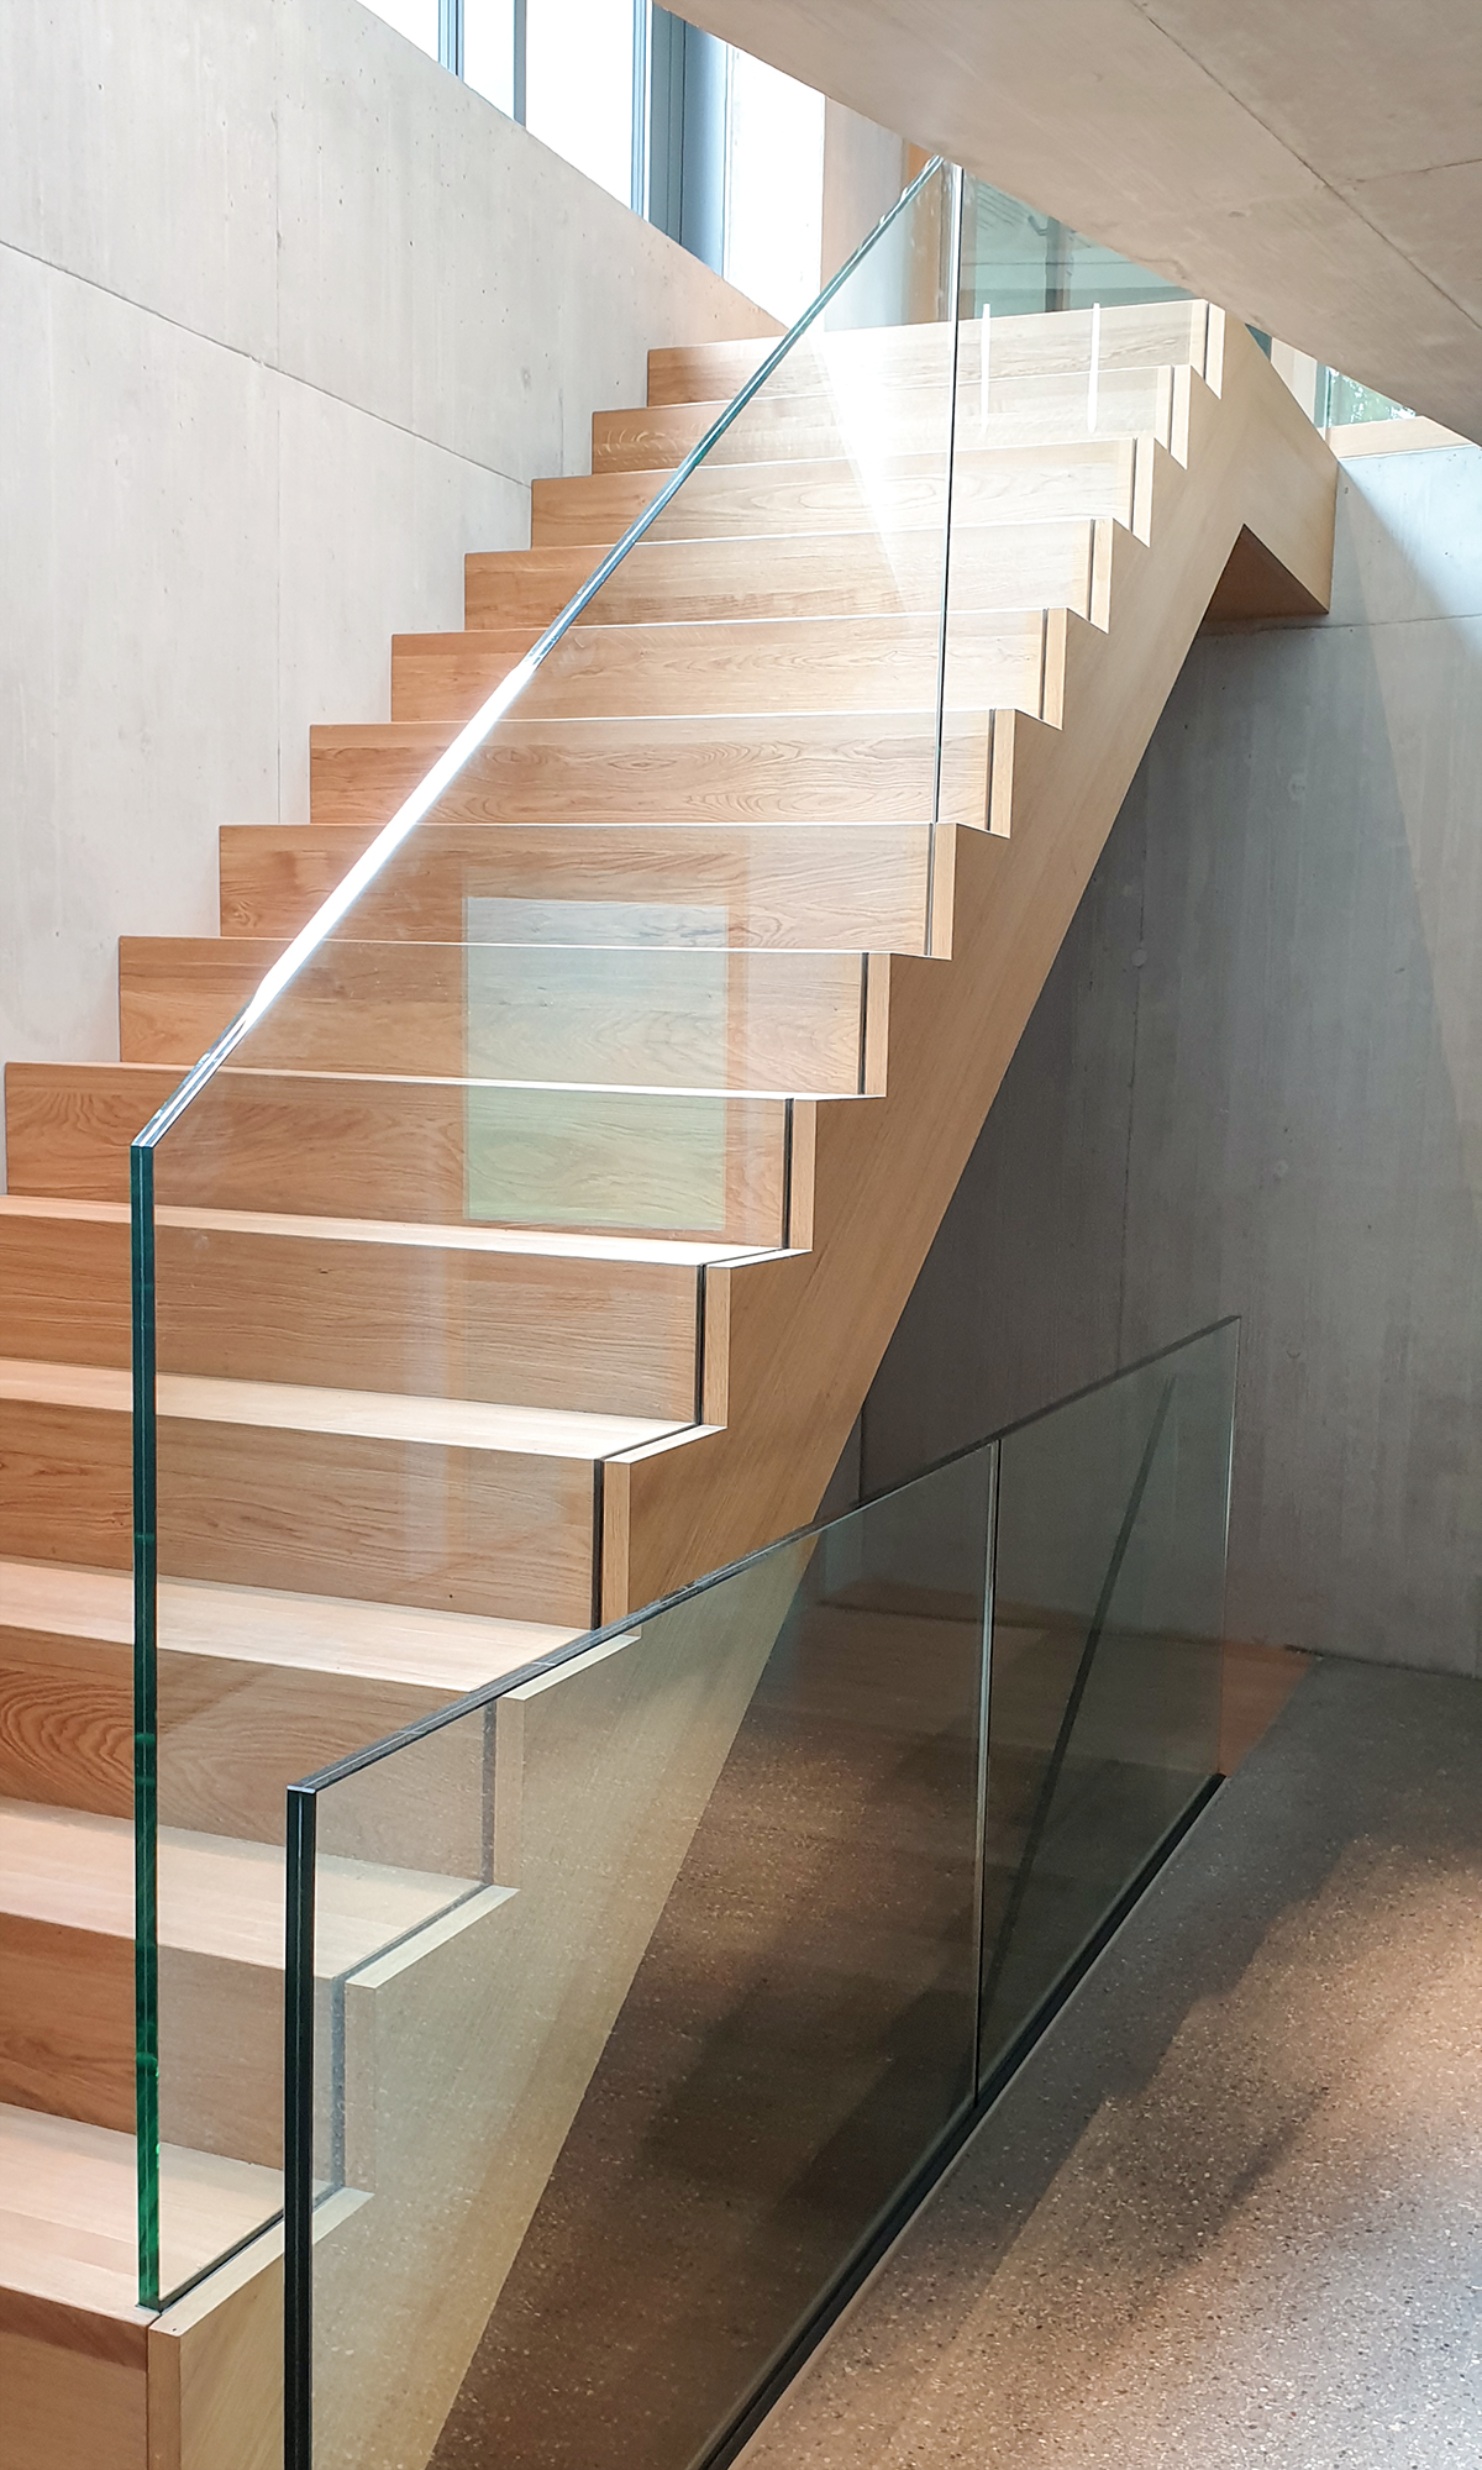 Un escalier sobre avec des marches en bois et une balustrade en verre relie le sous-sol au rez-de-chaussée.<br/><br/><br/><br/>